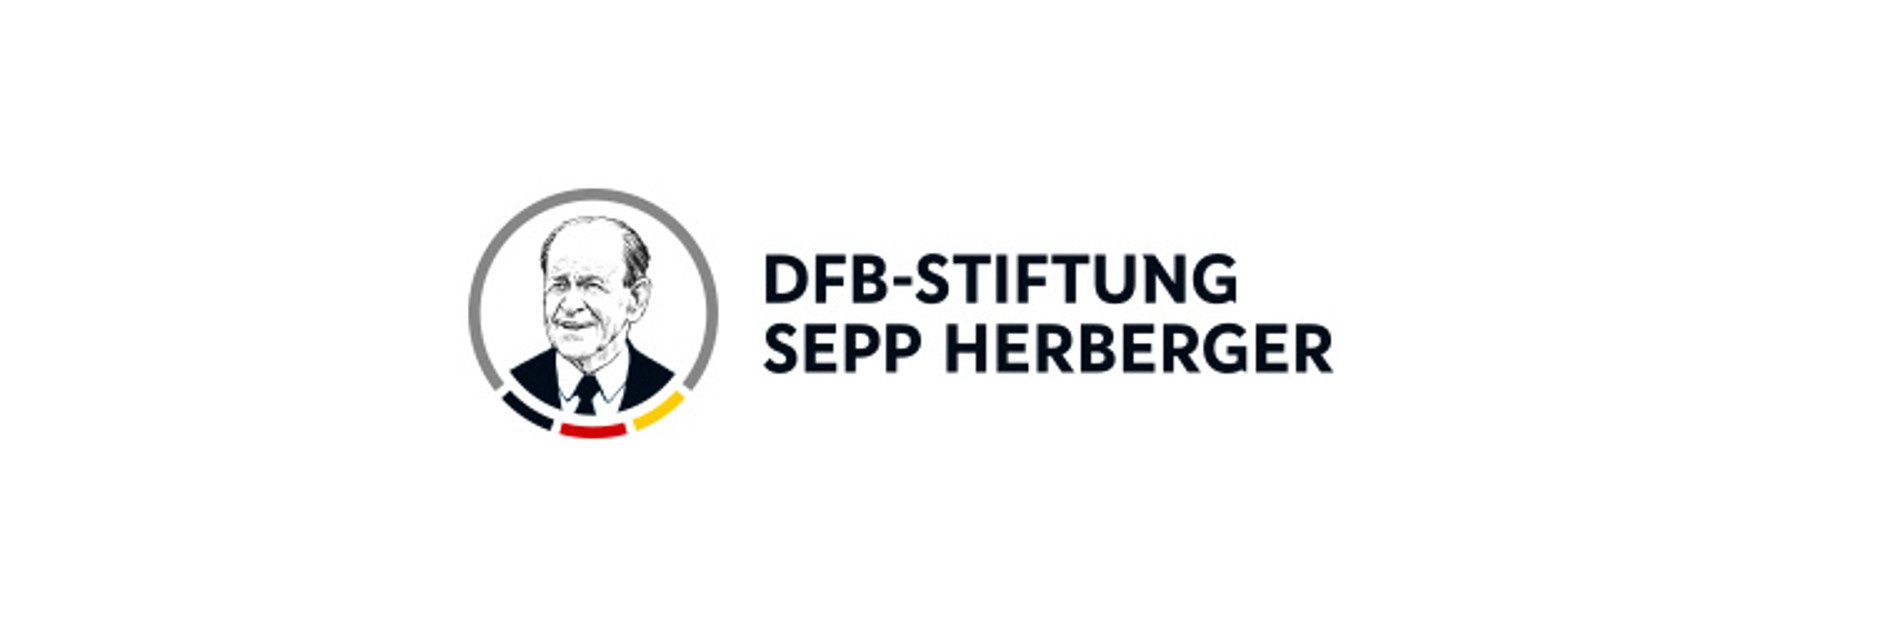 Das Logo der DFB-Stiftung Sepp Herberger: Links ein Bild von Sepp Herberger in einem Kreis mit schwarz-rot-goldener Verzierung. Daneben ein schwarzer Schriftzug mit dem Namen der Stiftung.